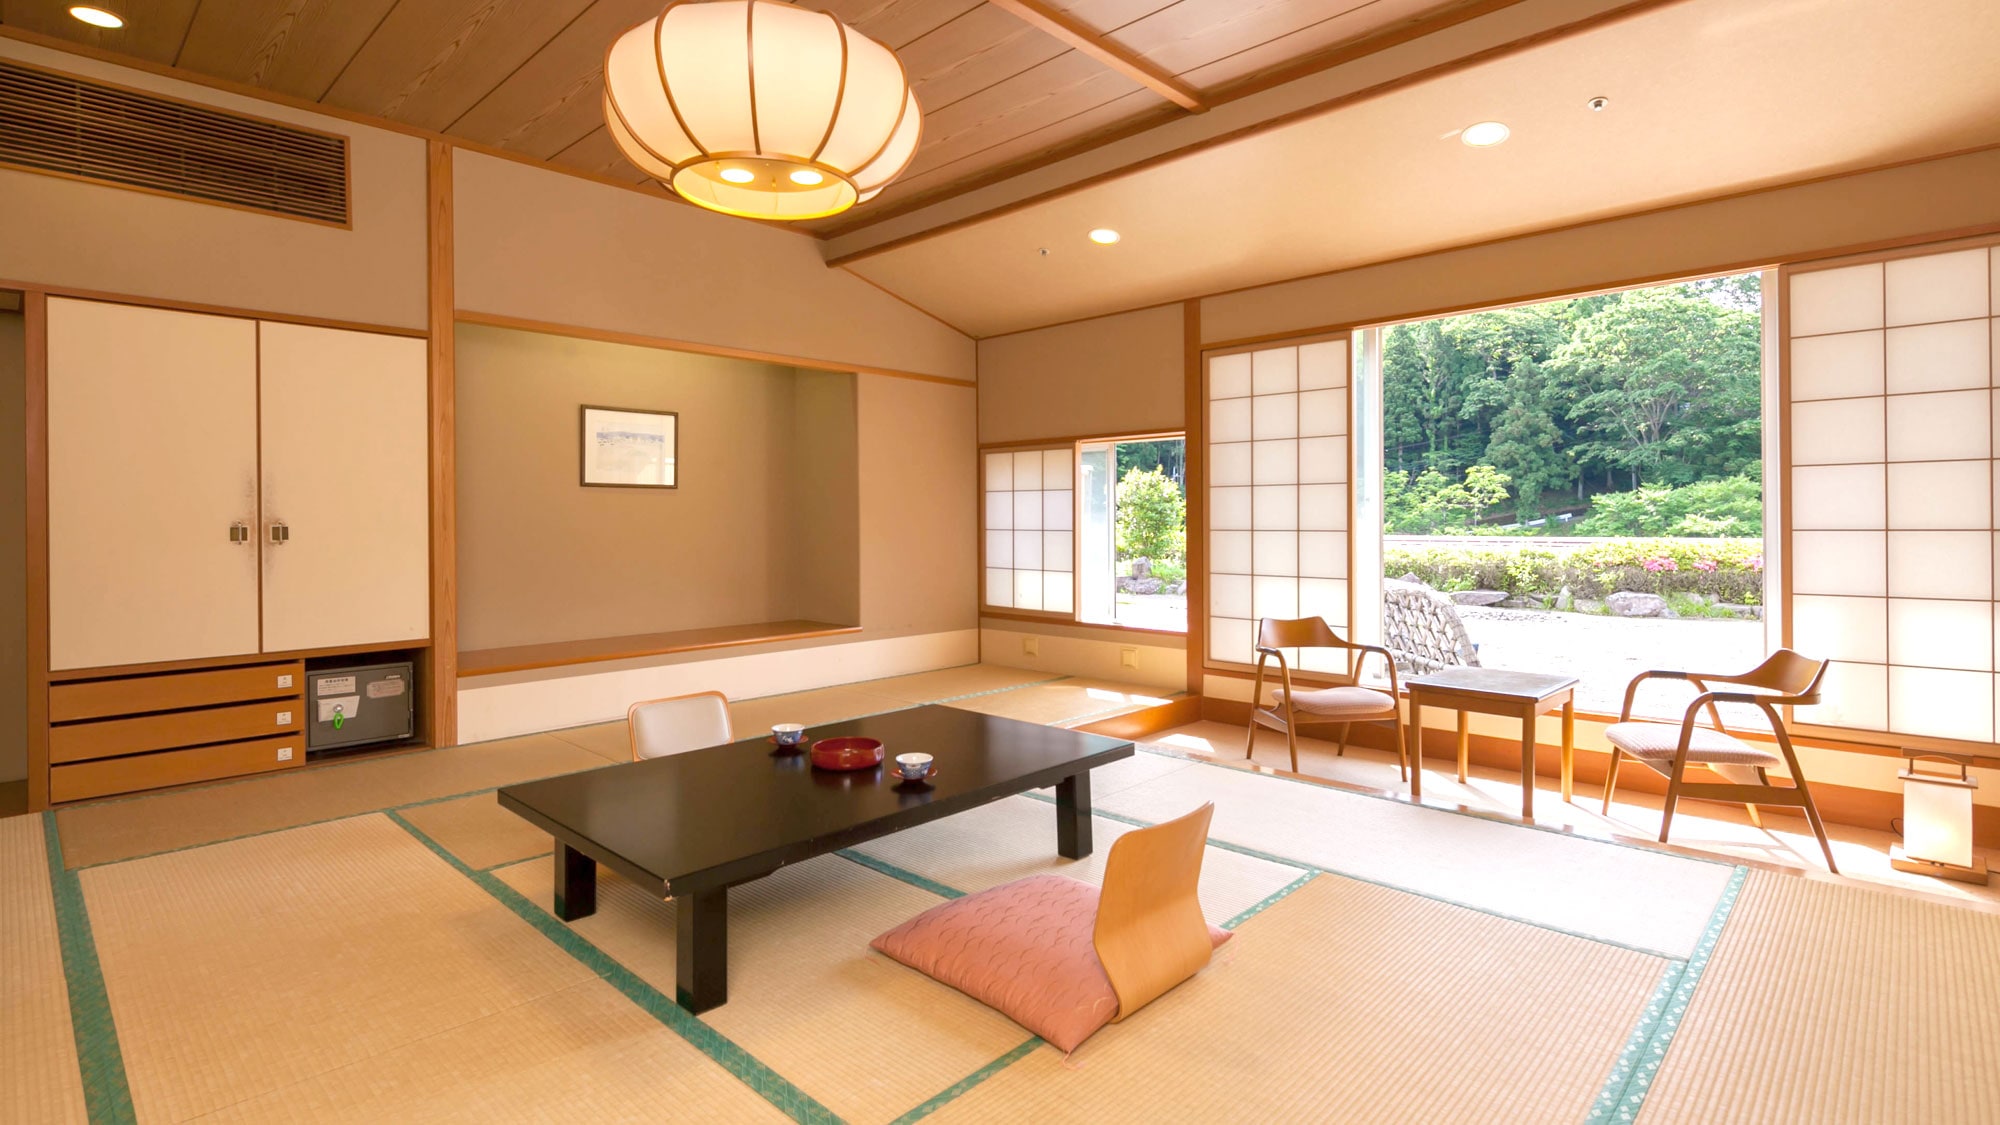 Kamar bergaya Jepang paling populer di gedung baru [Kiyoyamakan / Seiryukan lantai 1]